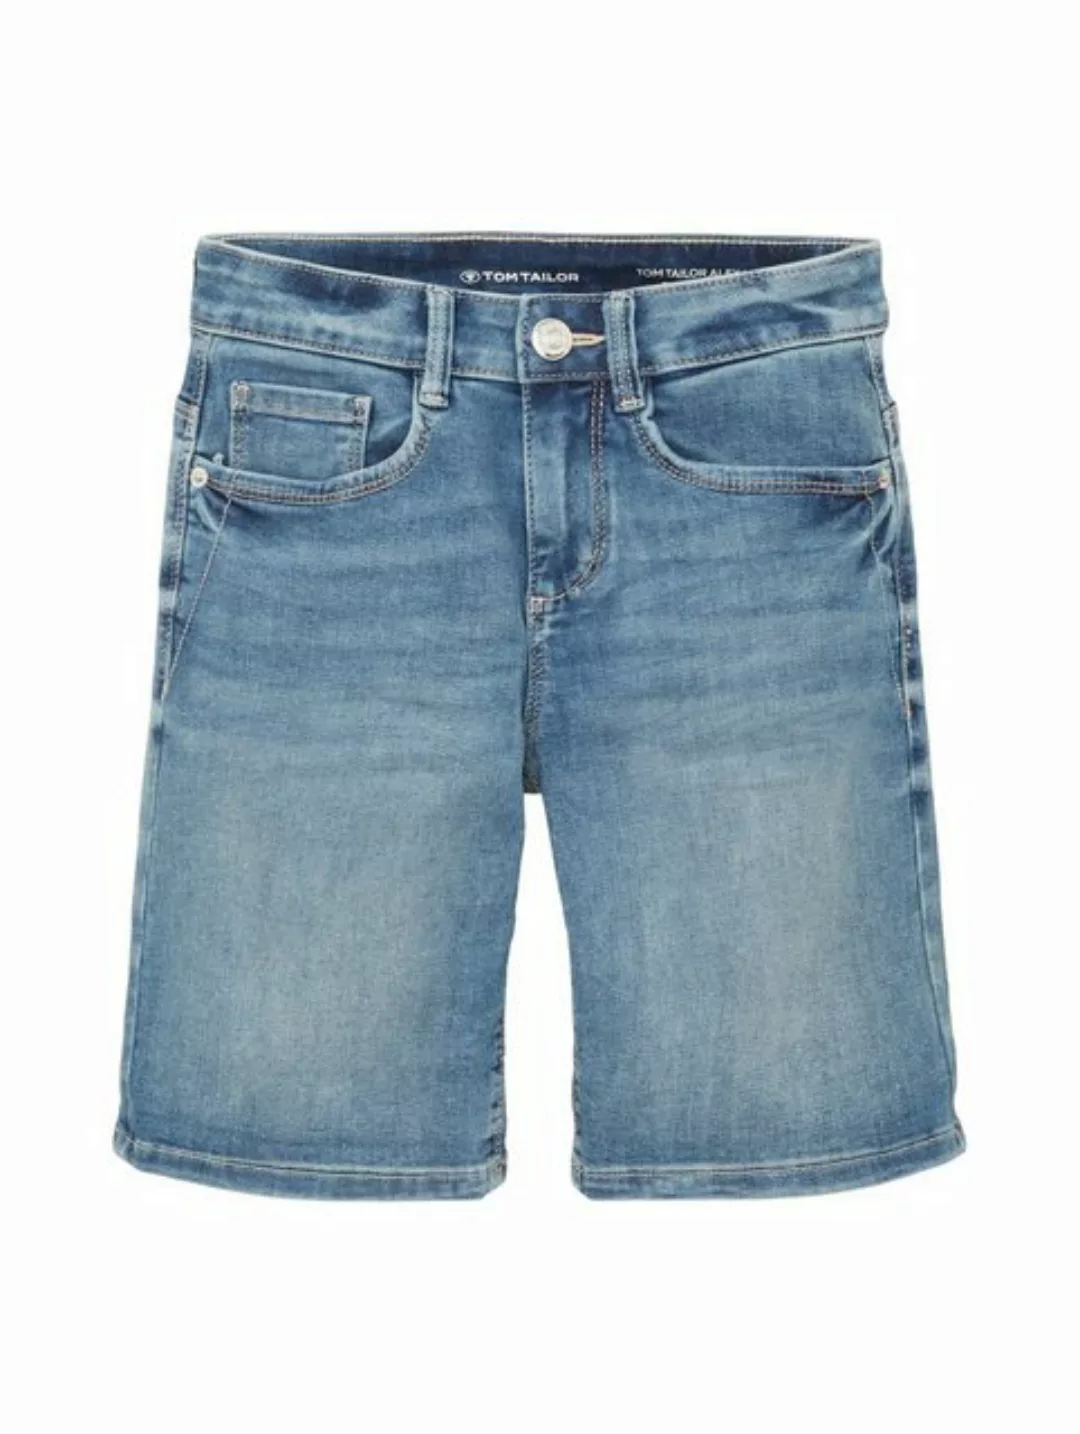 TOM TAILOR Jeansshorts Bermuda Shorts ALEXA SLIM 5343 in Blau günstig online kaufen